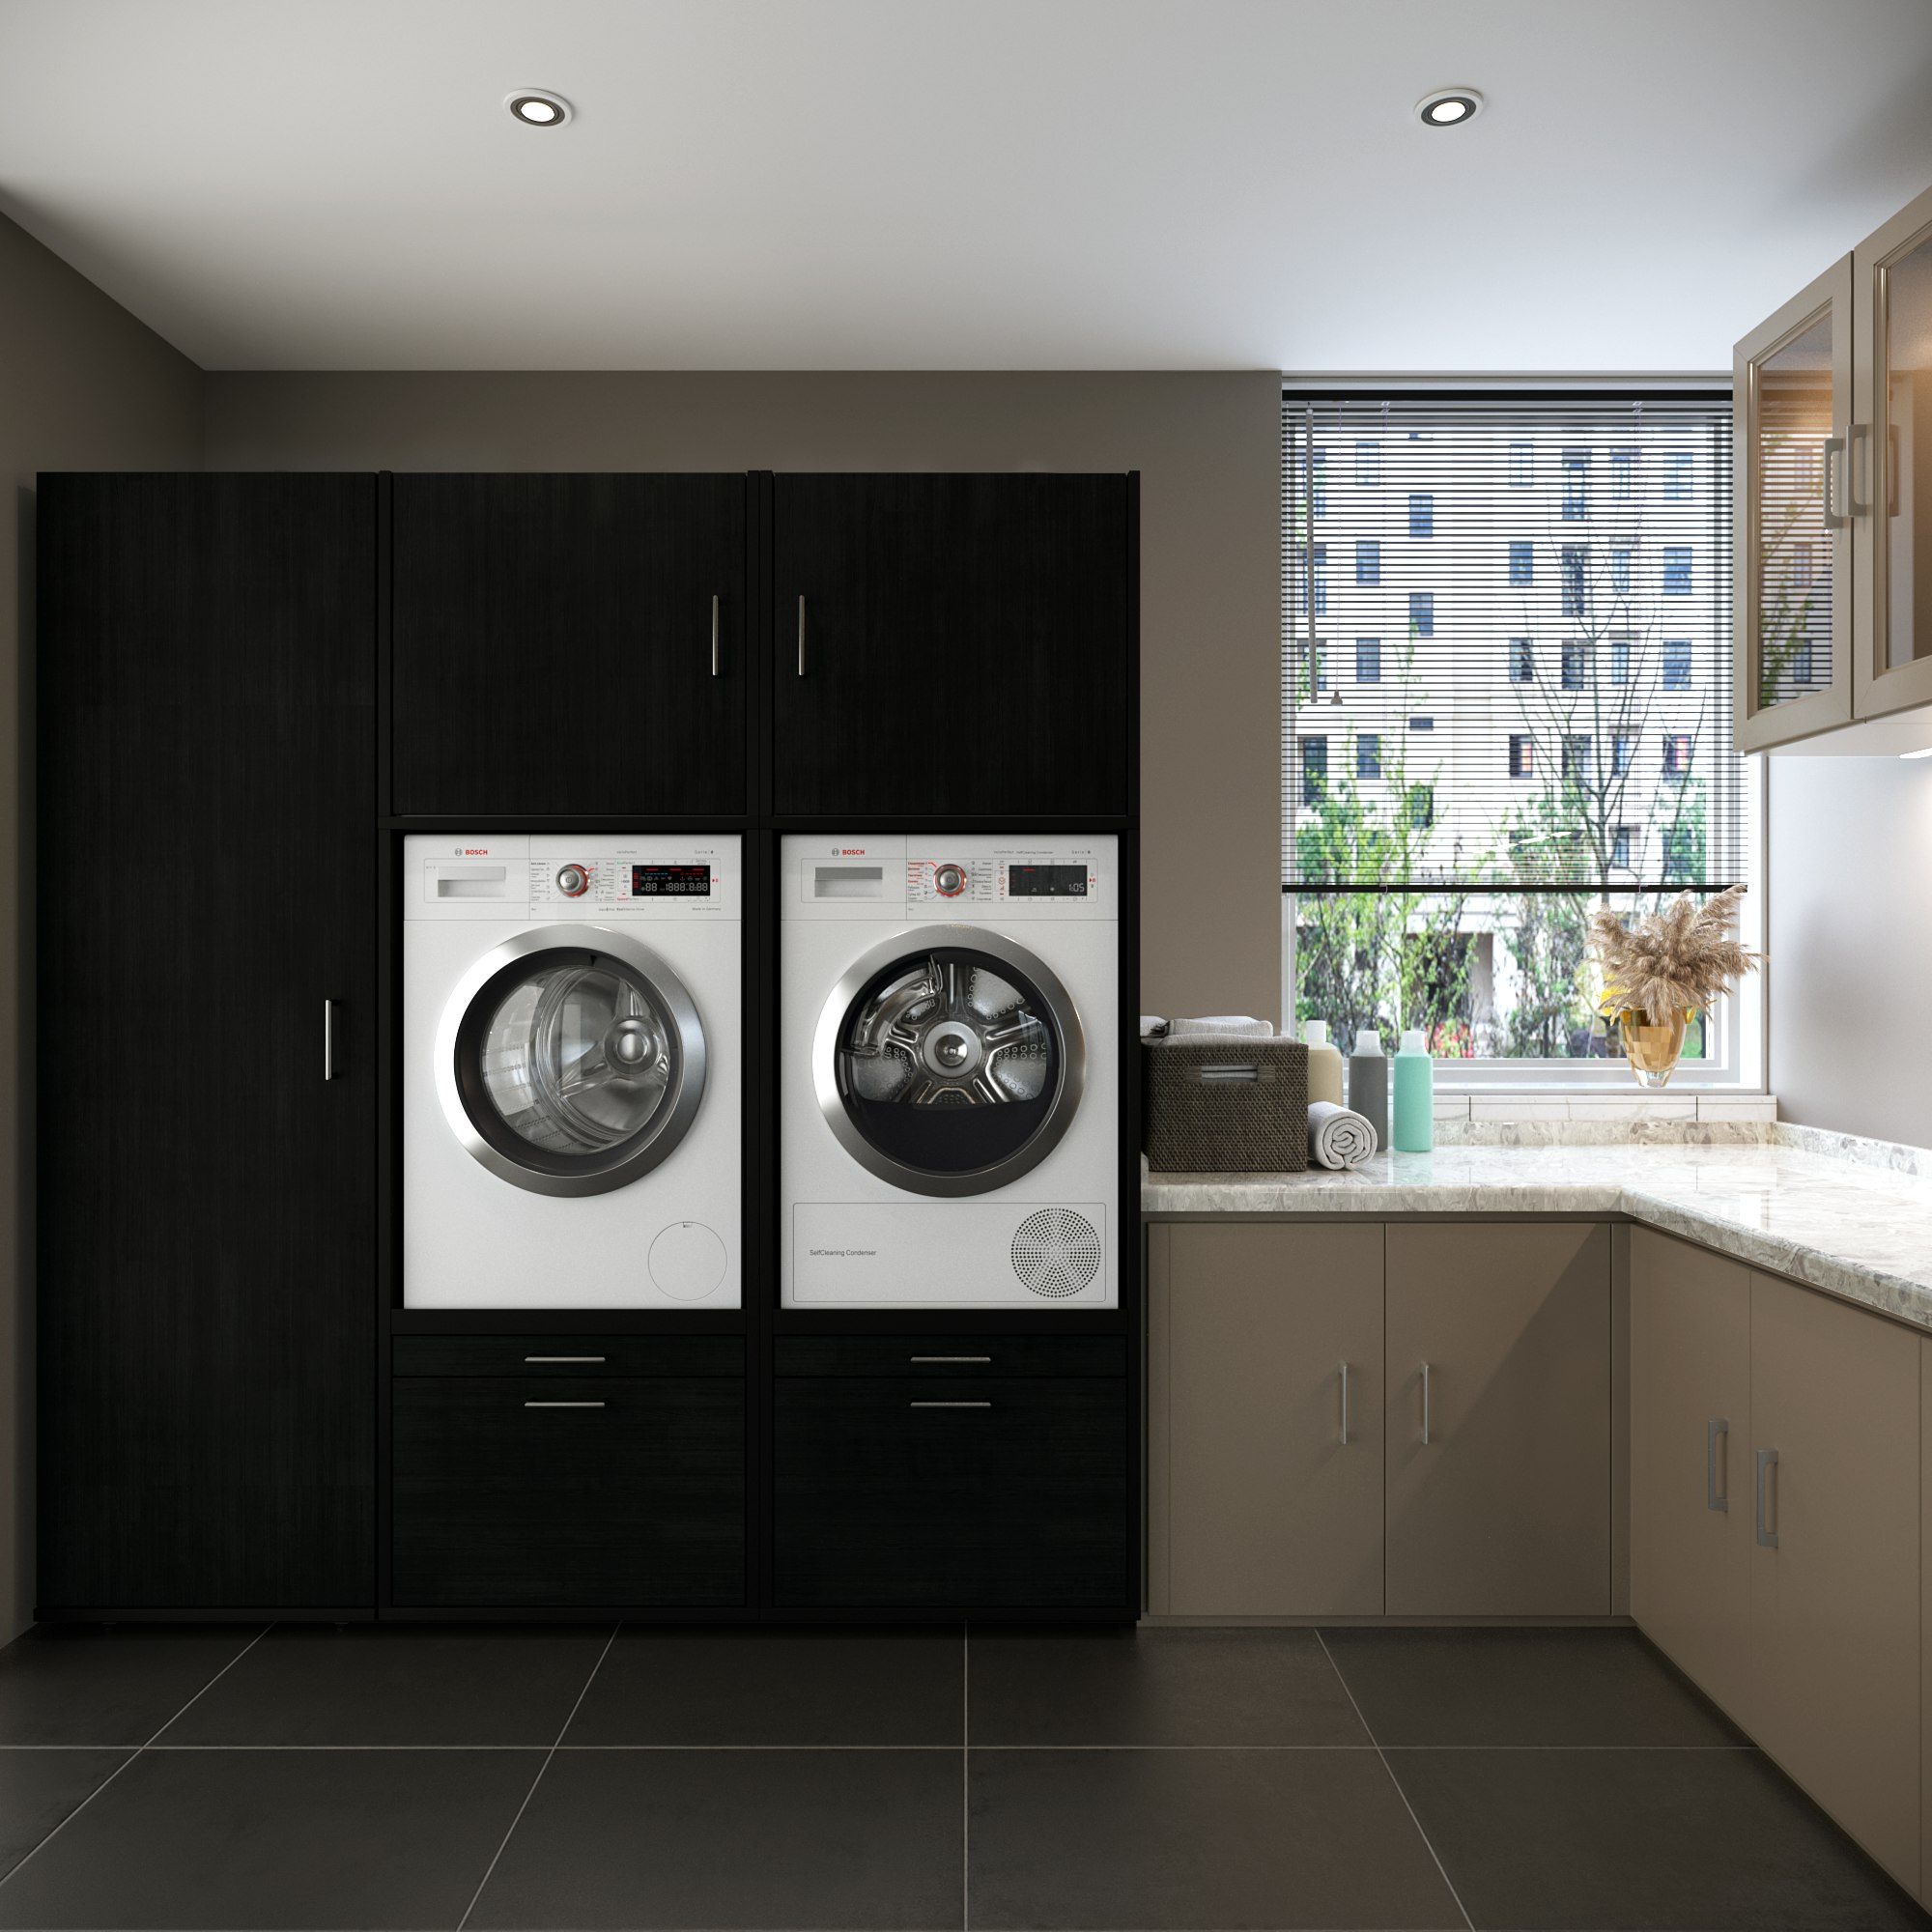 inspiratie voor het inrichten van een bijkeuken: een wasmachine en droger die veilig naast elkaar zijn geplaatst in een wasmachinekast, gecombineerd met een keukenblok en opbergruimte